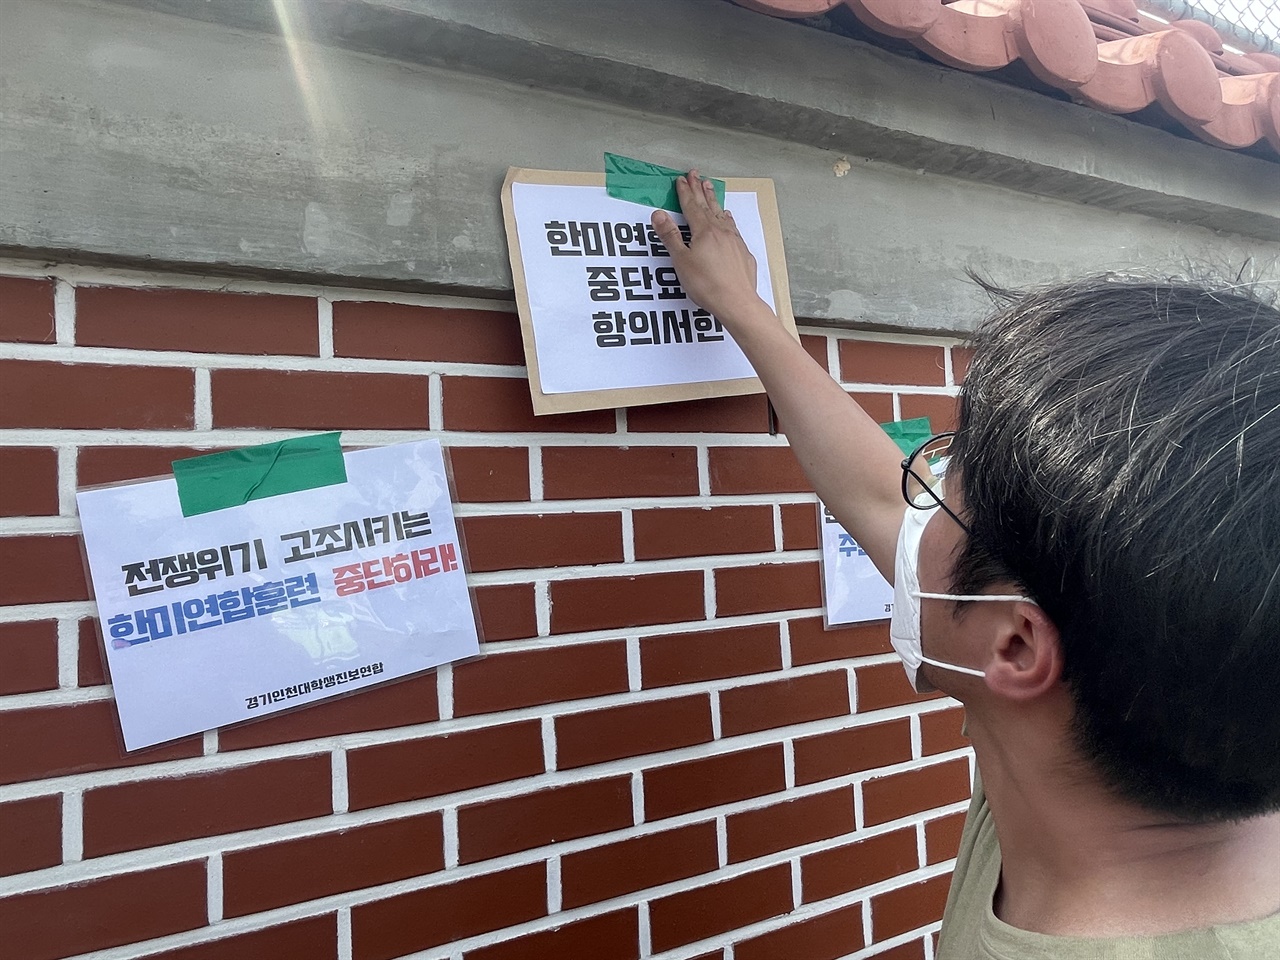 집회 참가자들이 주한미군기지 벽면에 구호가 적힌 피켓과 항의서한문을 붙이고 있다.
